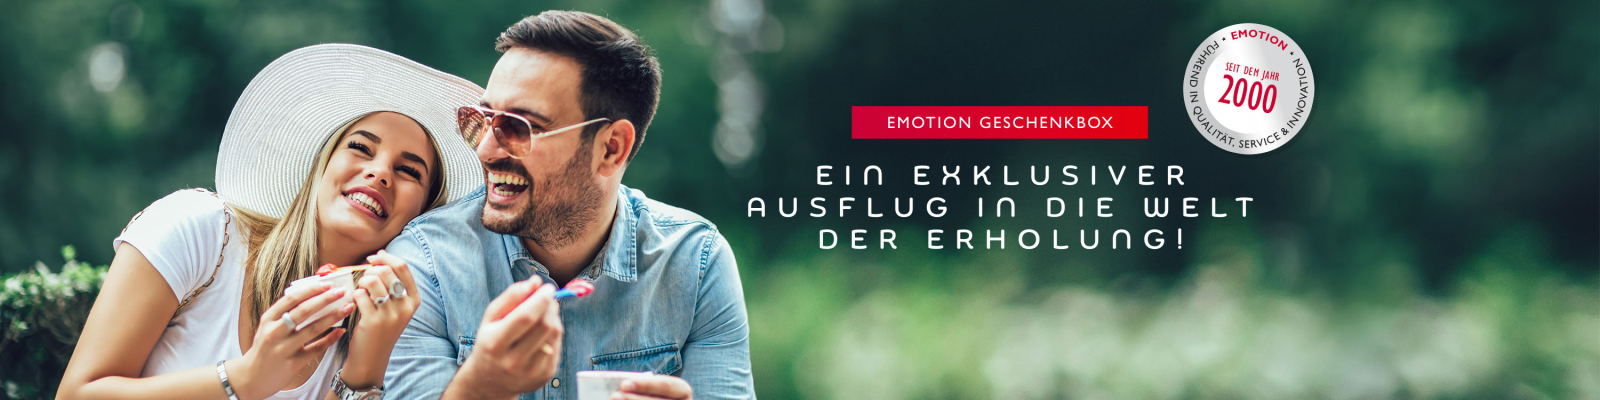 Banner EMOTION Geschenkbox6